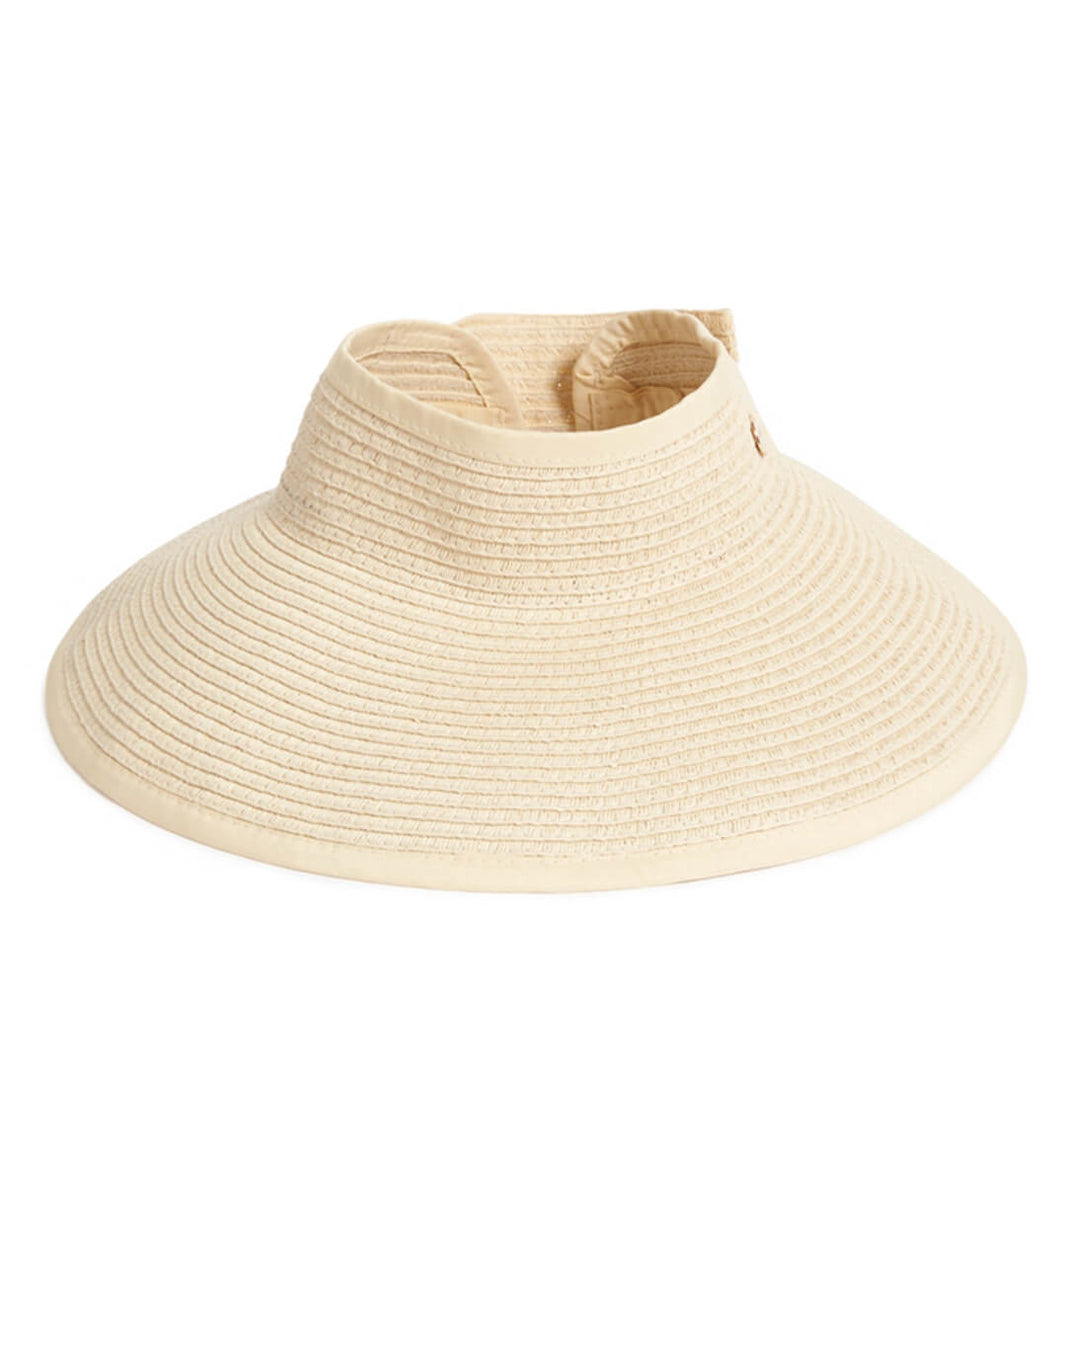 Beach Hats | Summer Hats